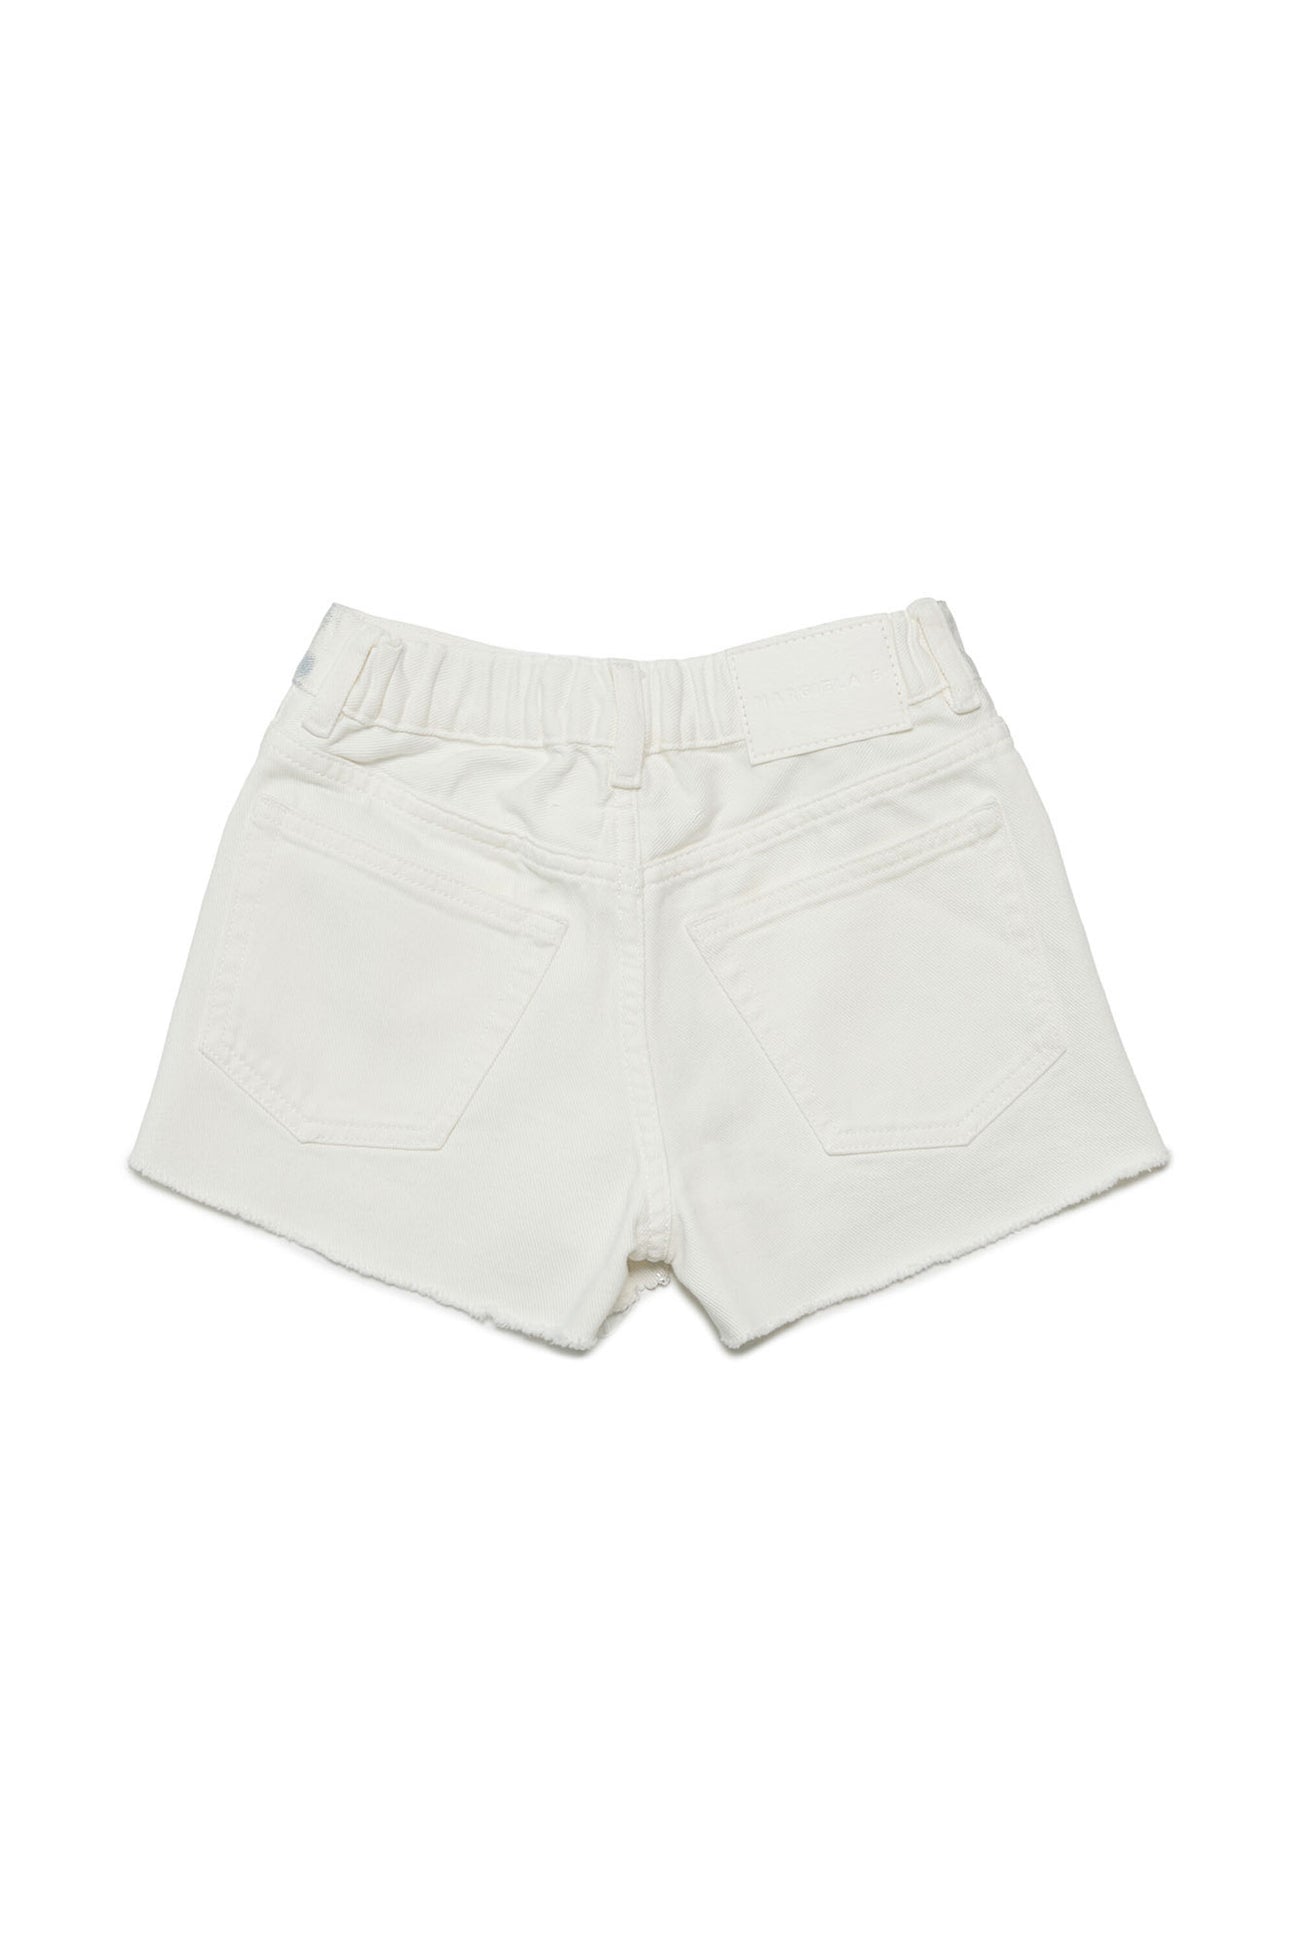 White metallic effect denim shorts White metallic effect denim shorts